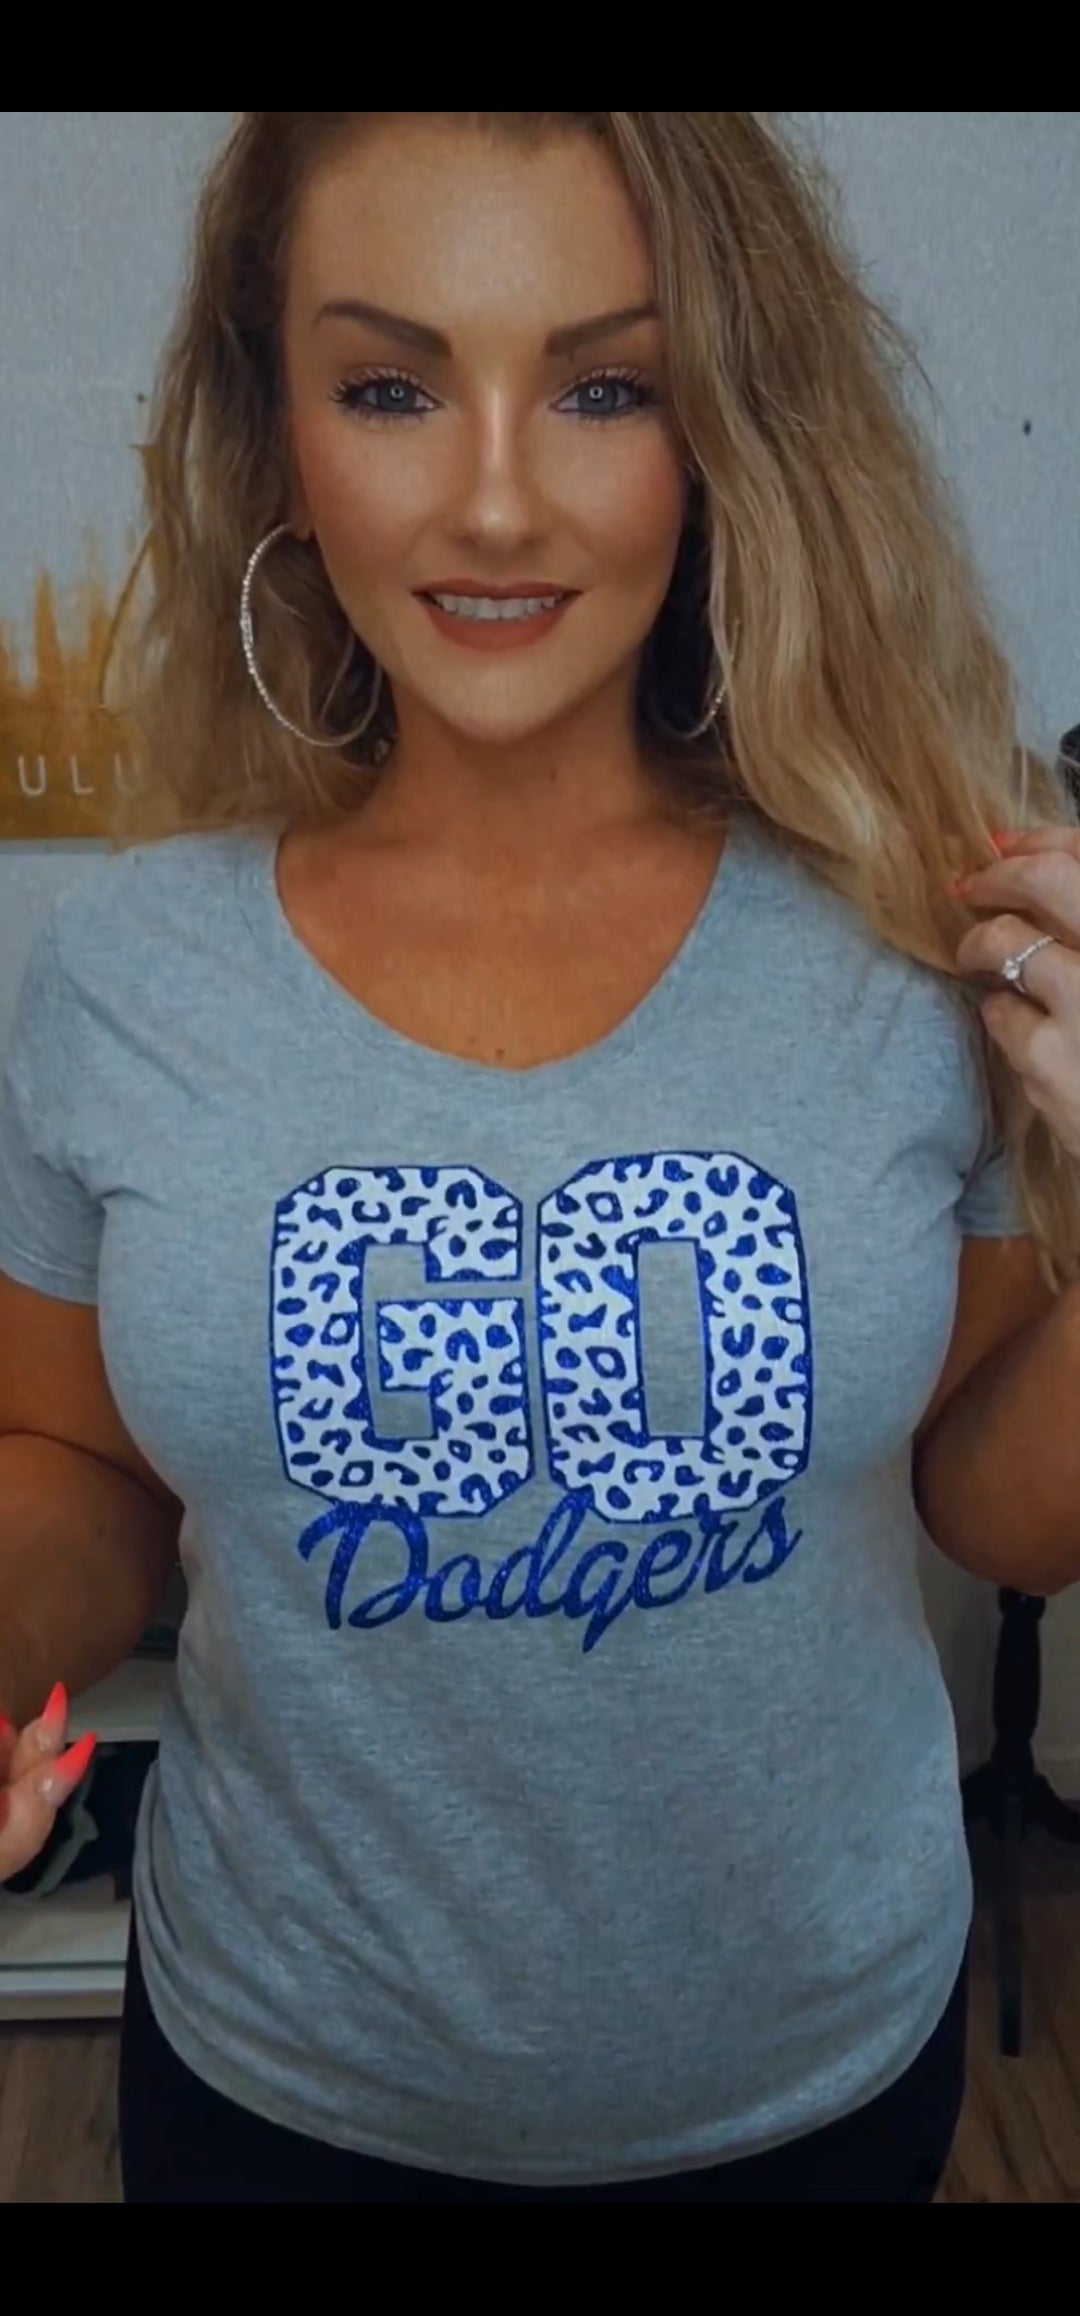 Los Angeles Leopard Print Glitter Shirt or Tank Top: Baseball Fan